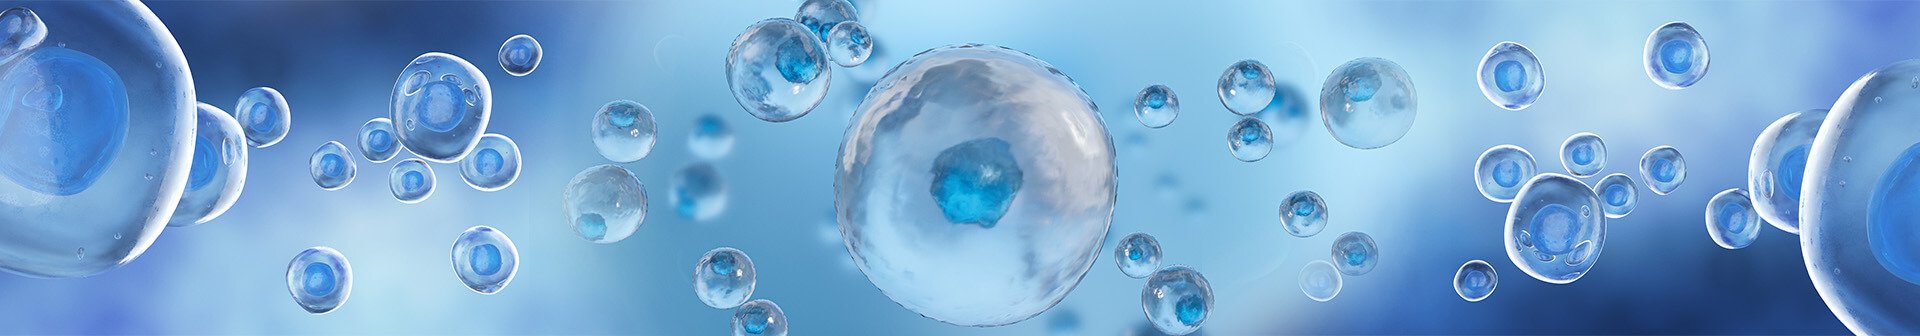 hyaluronic bubbles